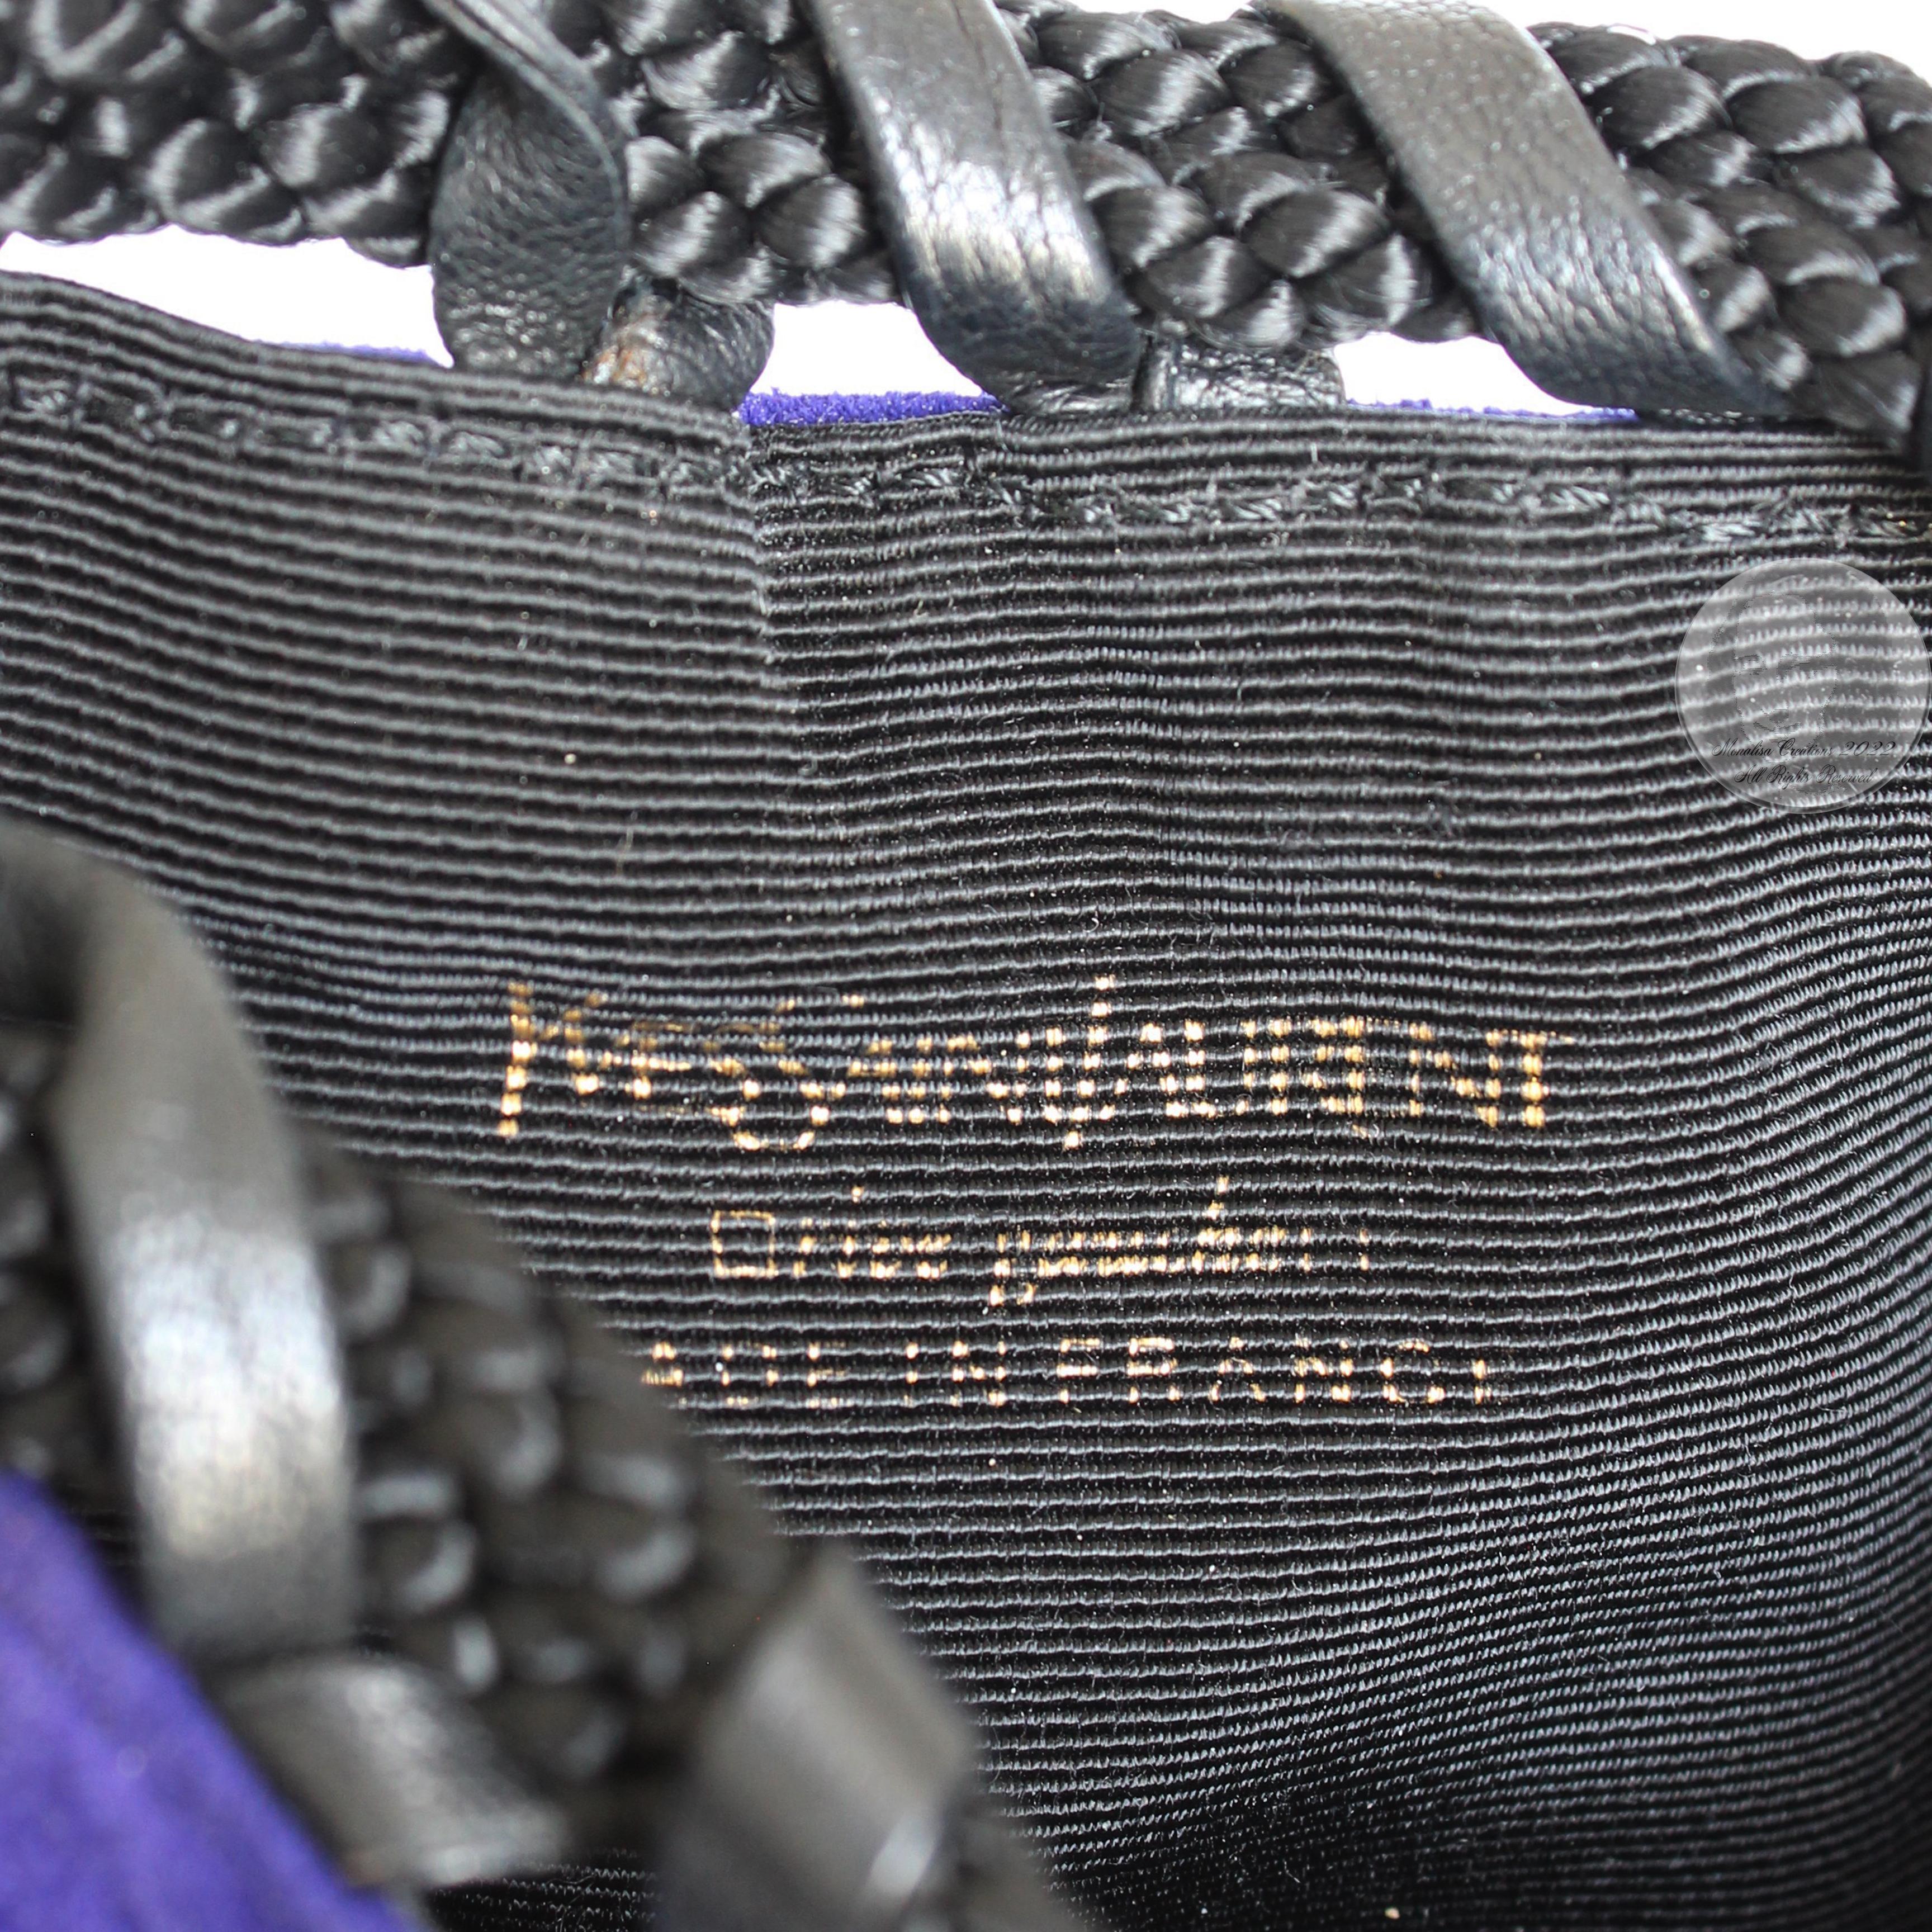 Yves Saint Laurent Evening Bag Tassels Purple Black Suede Leather Belt Pouch 90s 10